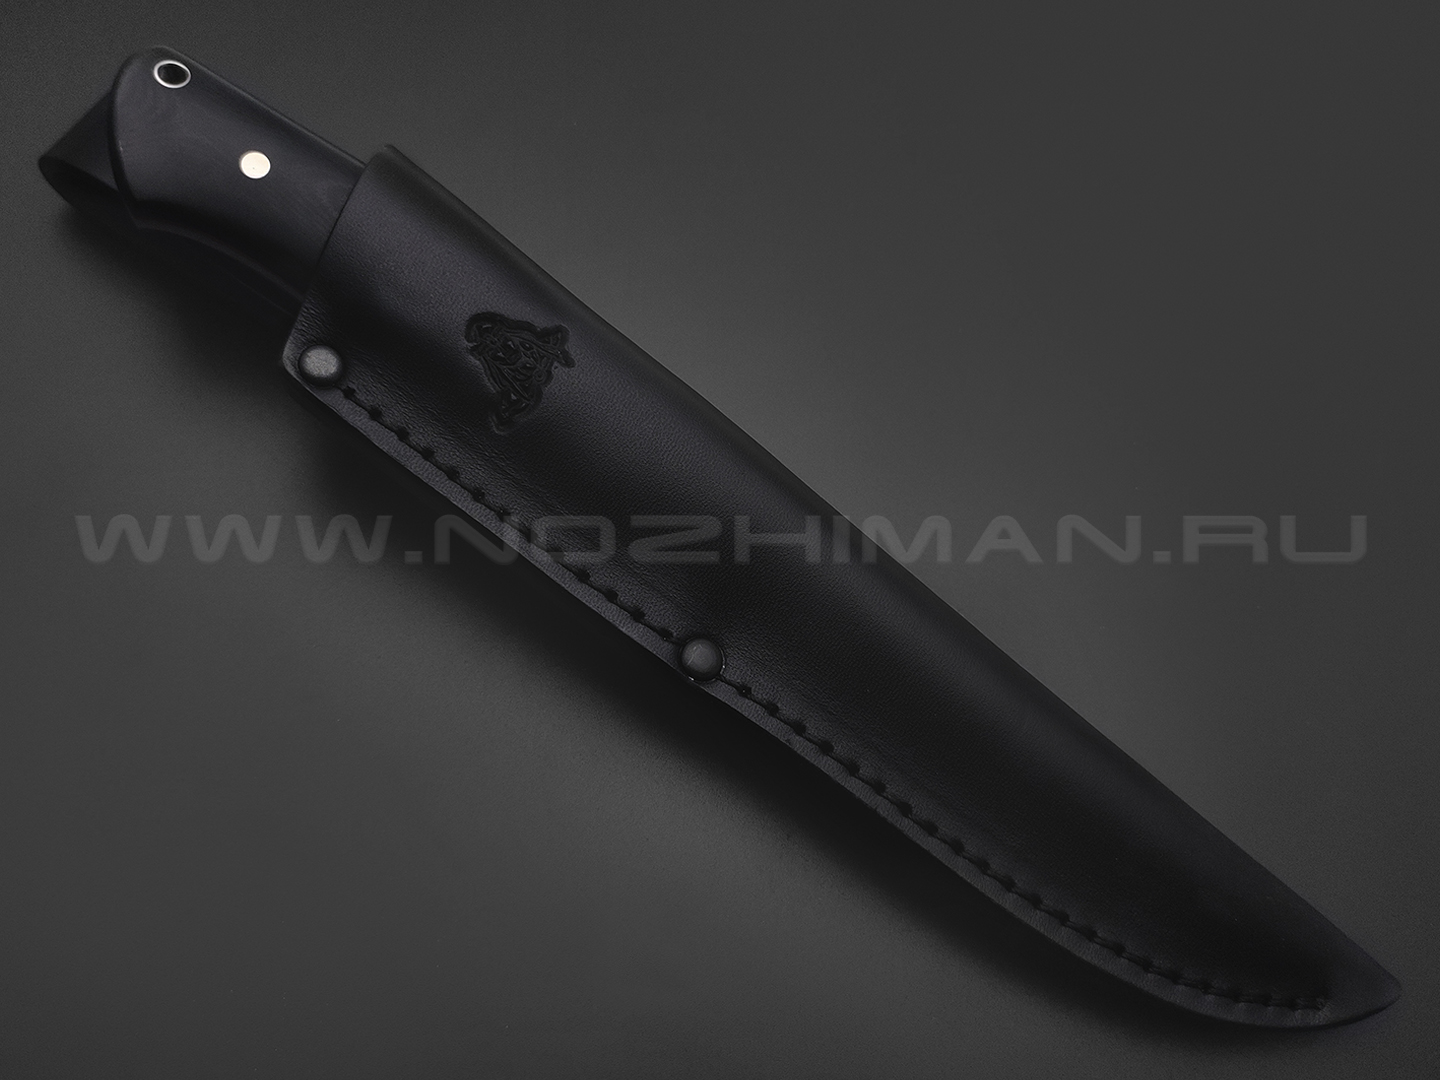 Кметь нож Консул ЦМ сталь Bohler K340, рукоять G10 black